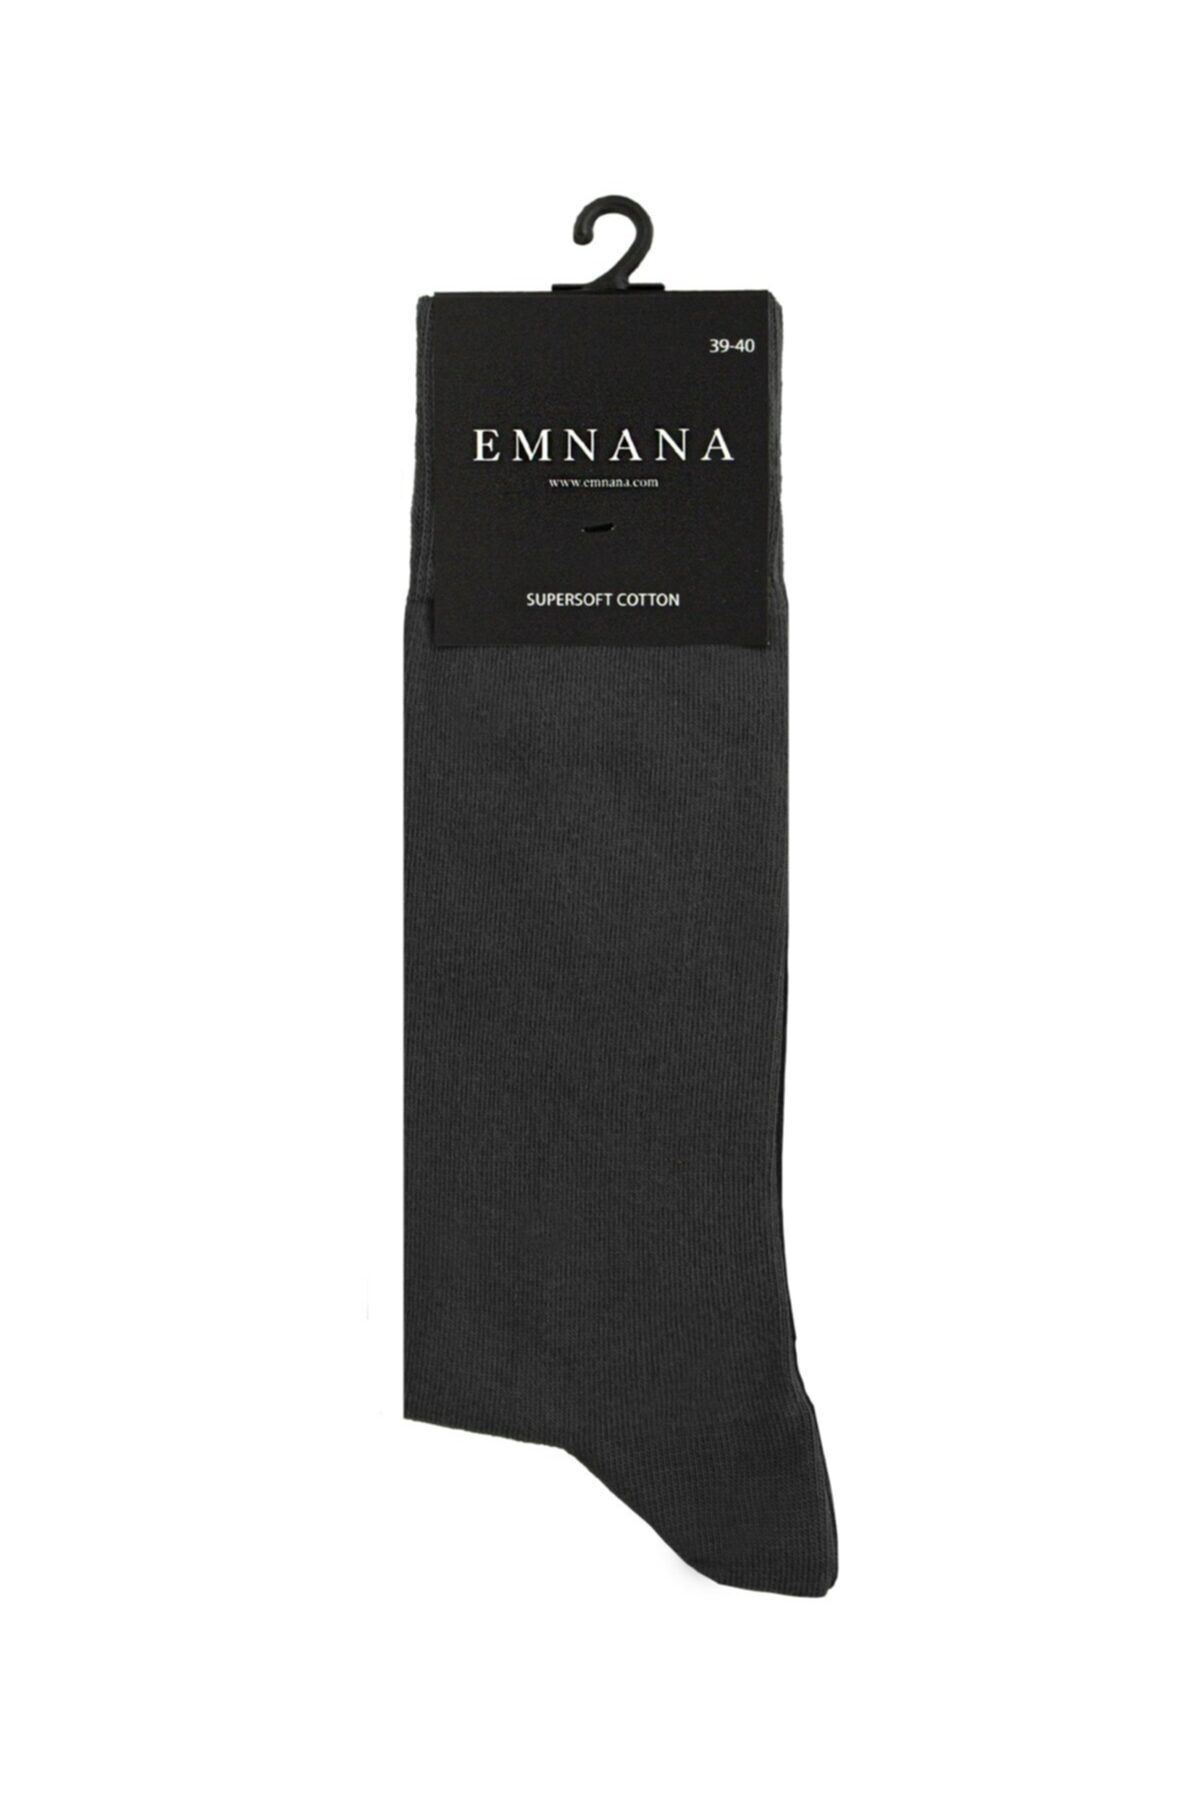 EMNANA 5 Adet Pamuklu Erkek Çorap - Füme